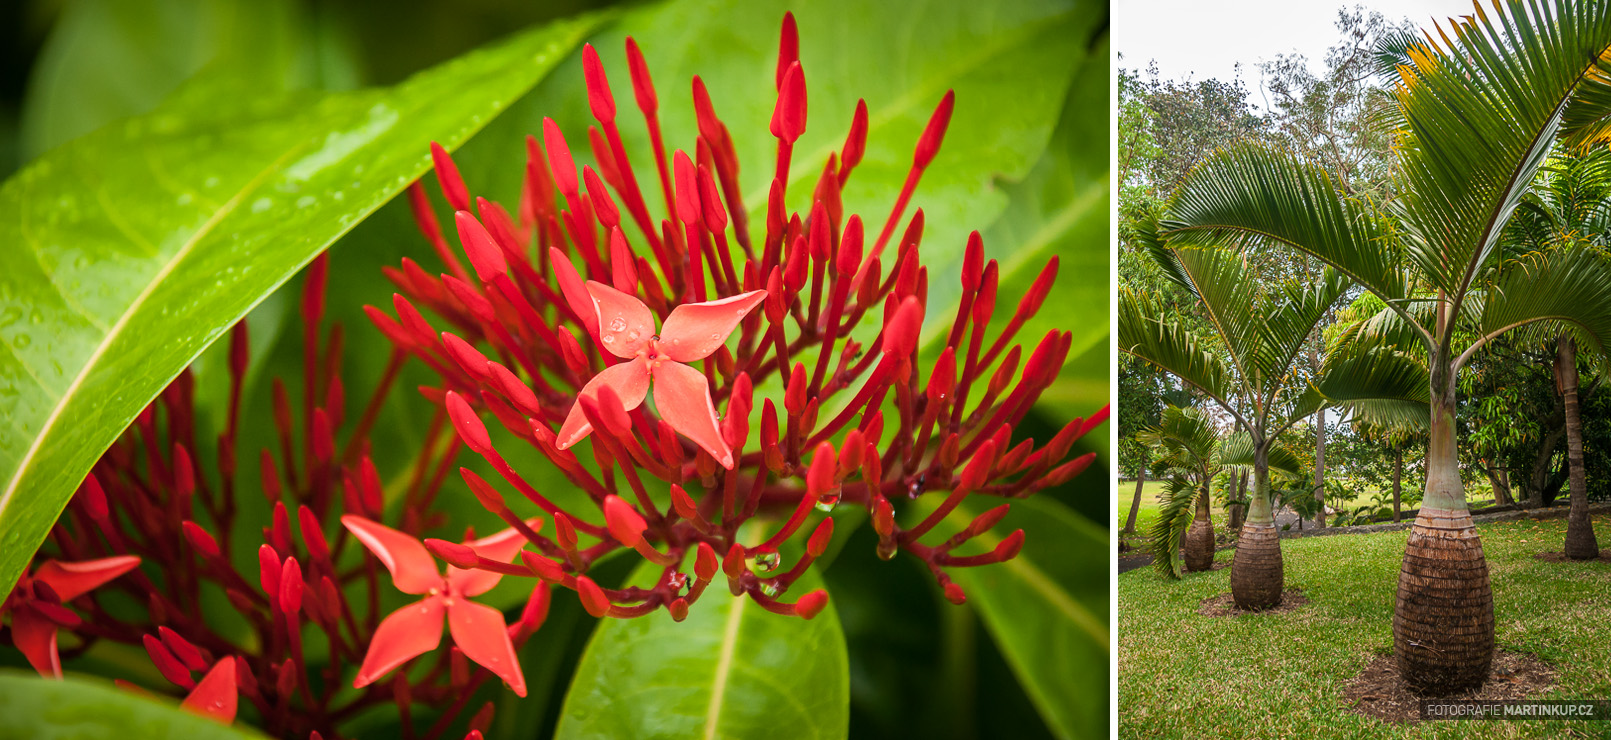 Botanická zahrada Pamplemousses (Mauritius)